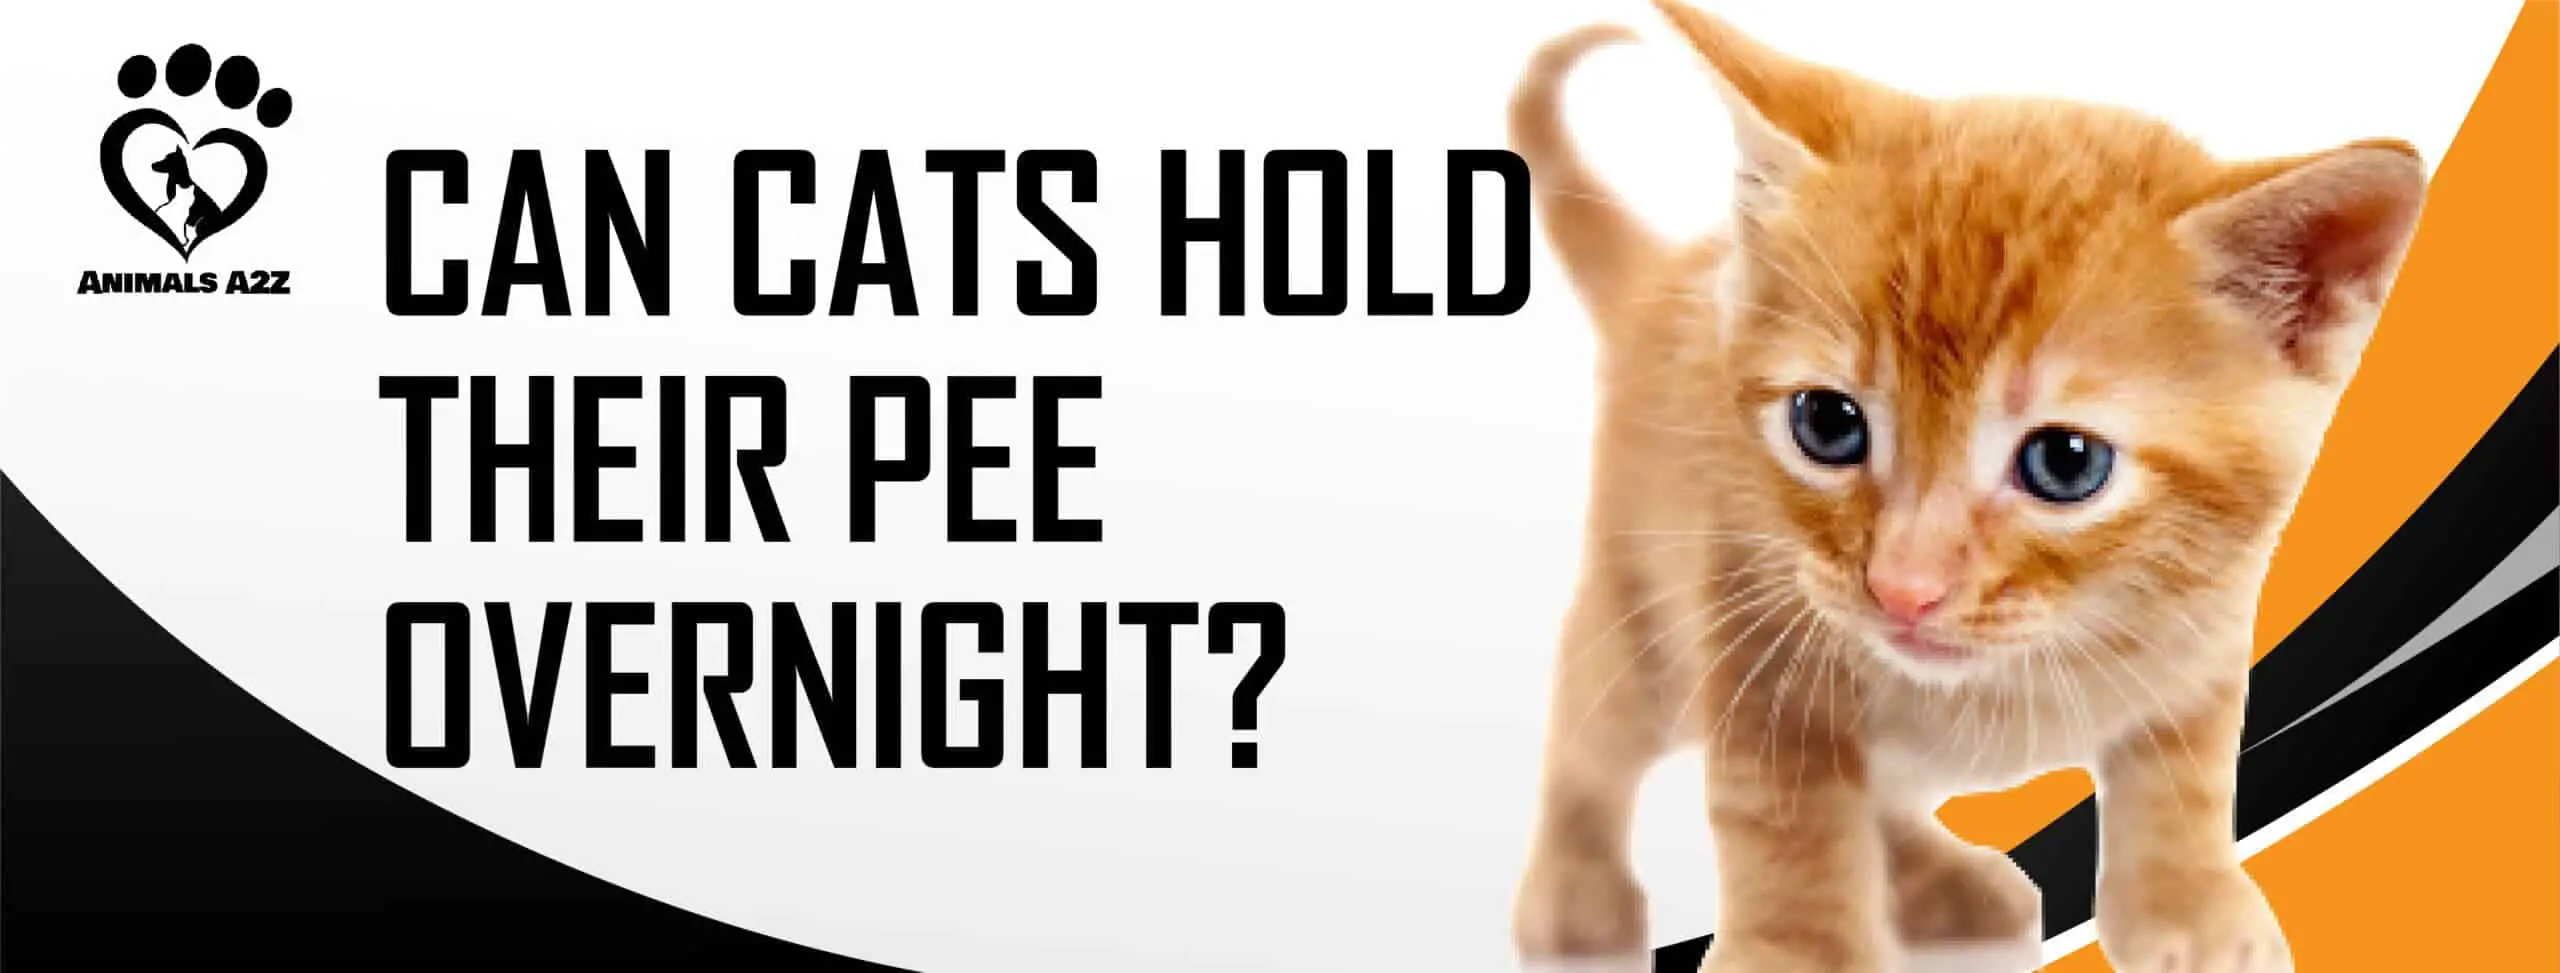 Les chats peuvent-ils retenir leur pipi pendant la nuit ?